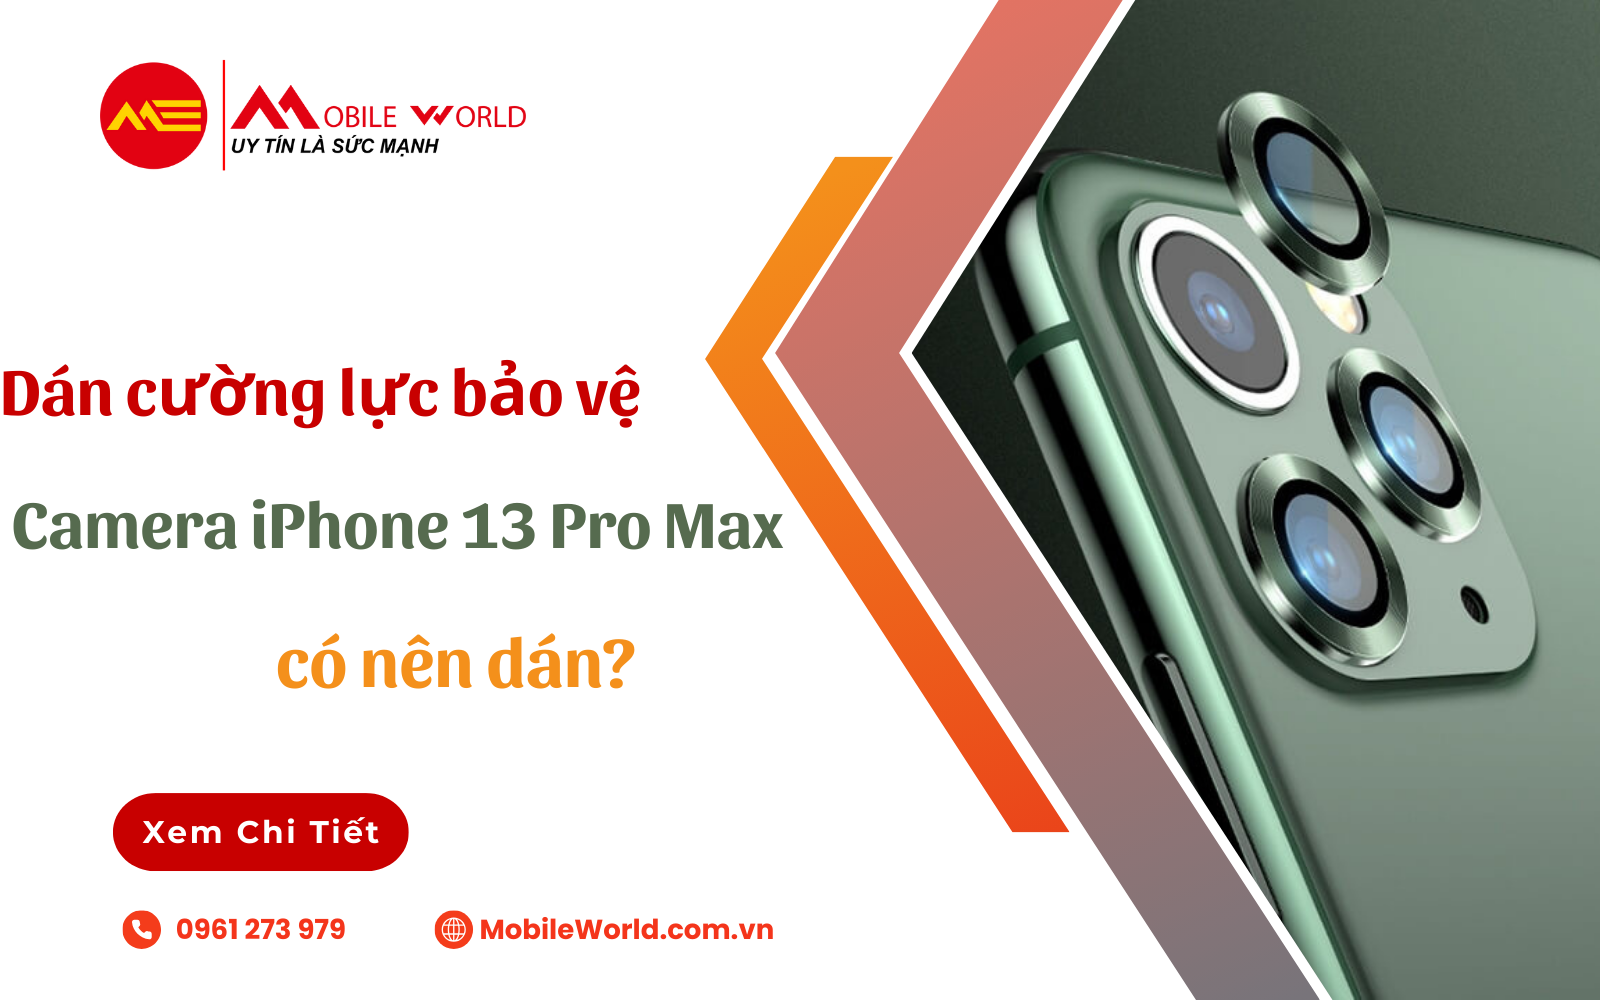 Dán cường lực bảo vệ Camera iPhone 13 Pro Max, có nên dán?